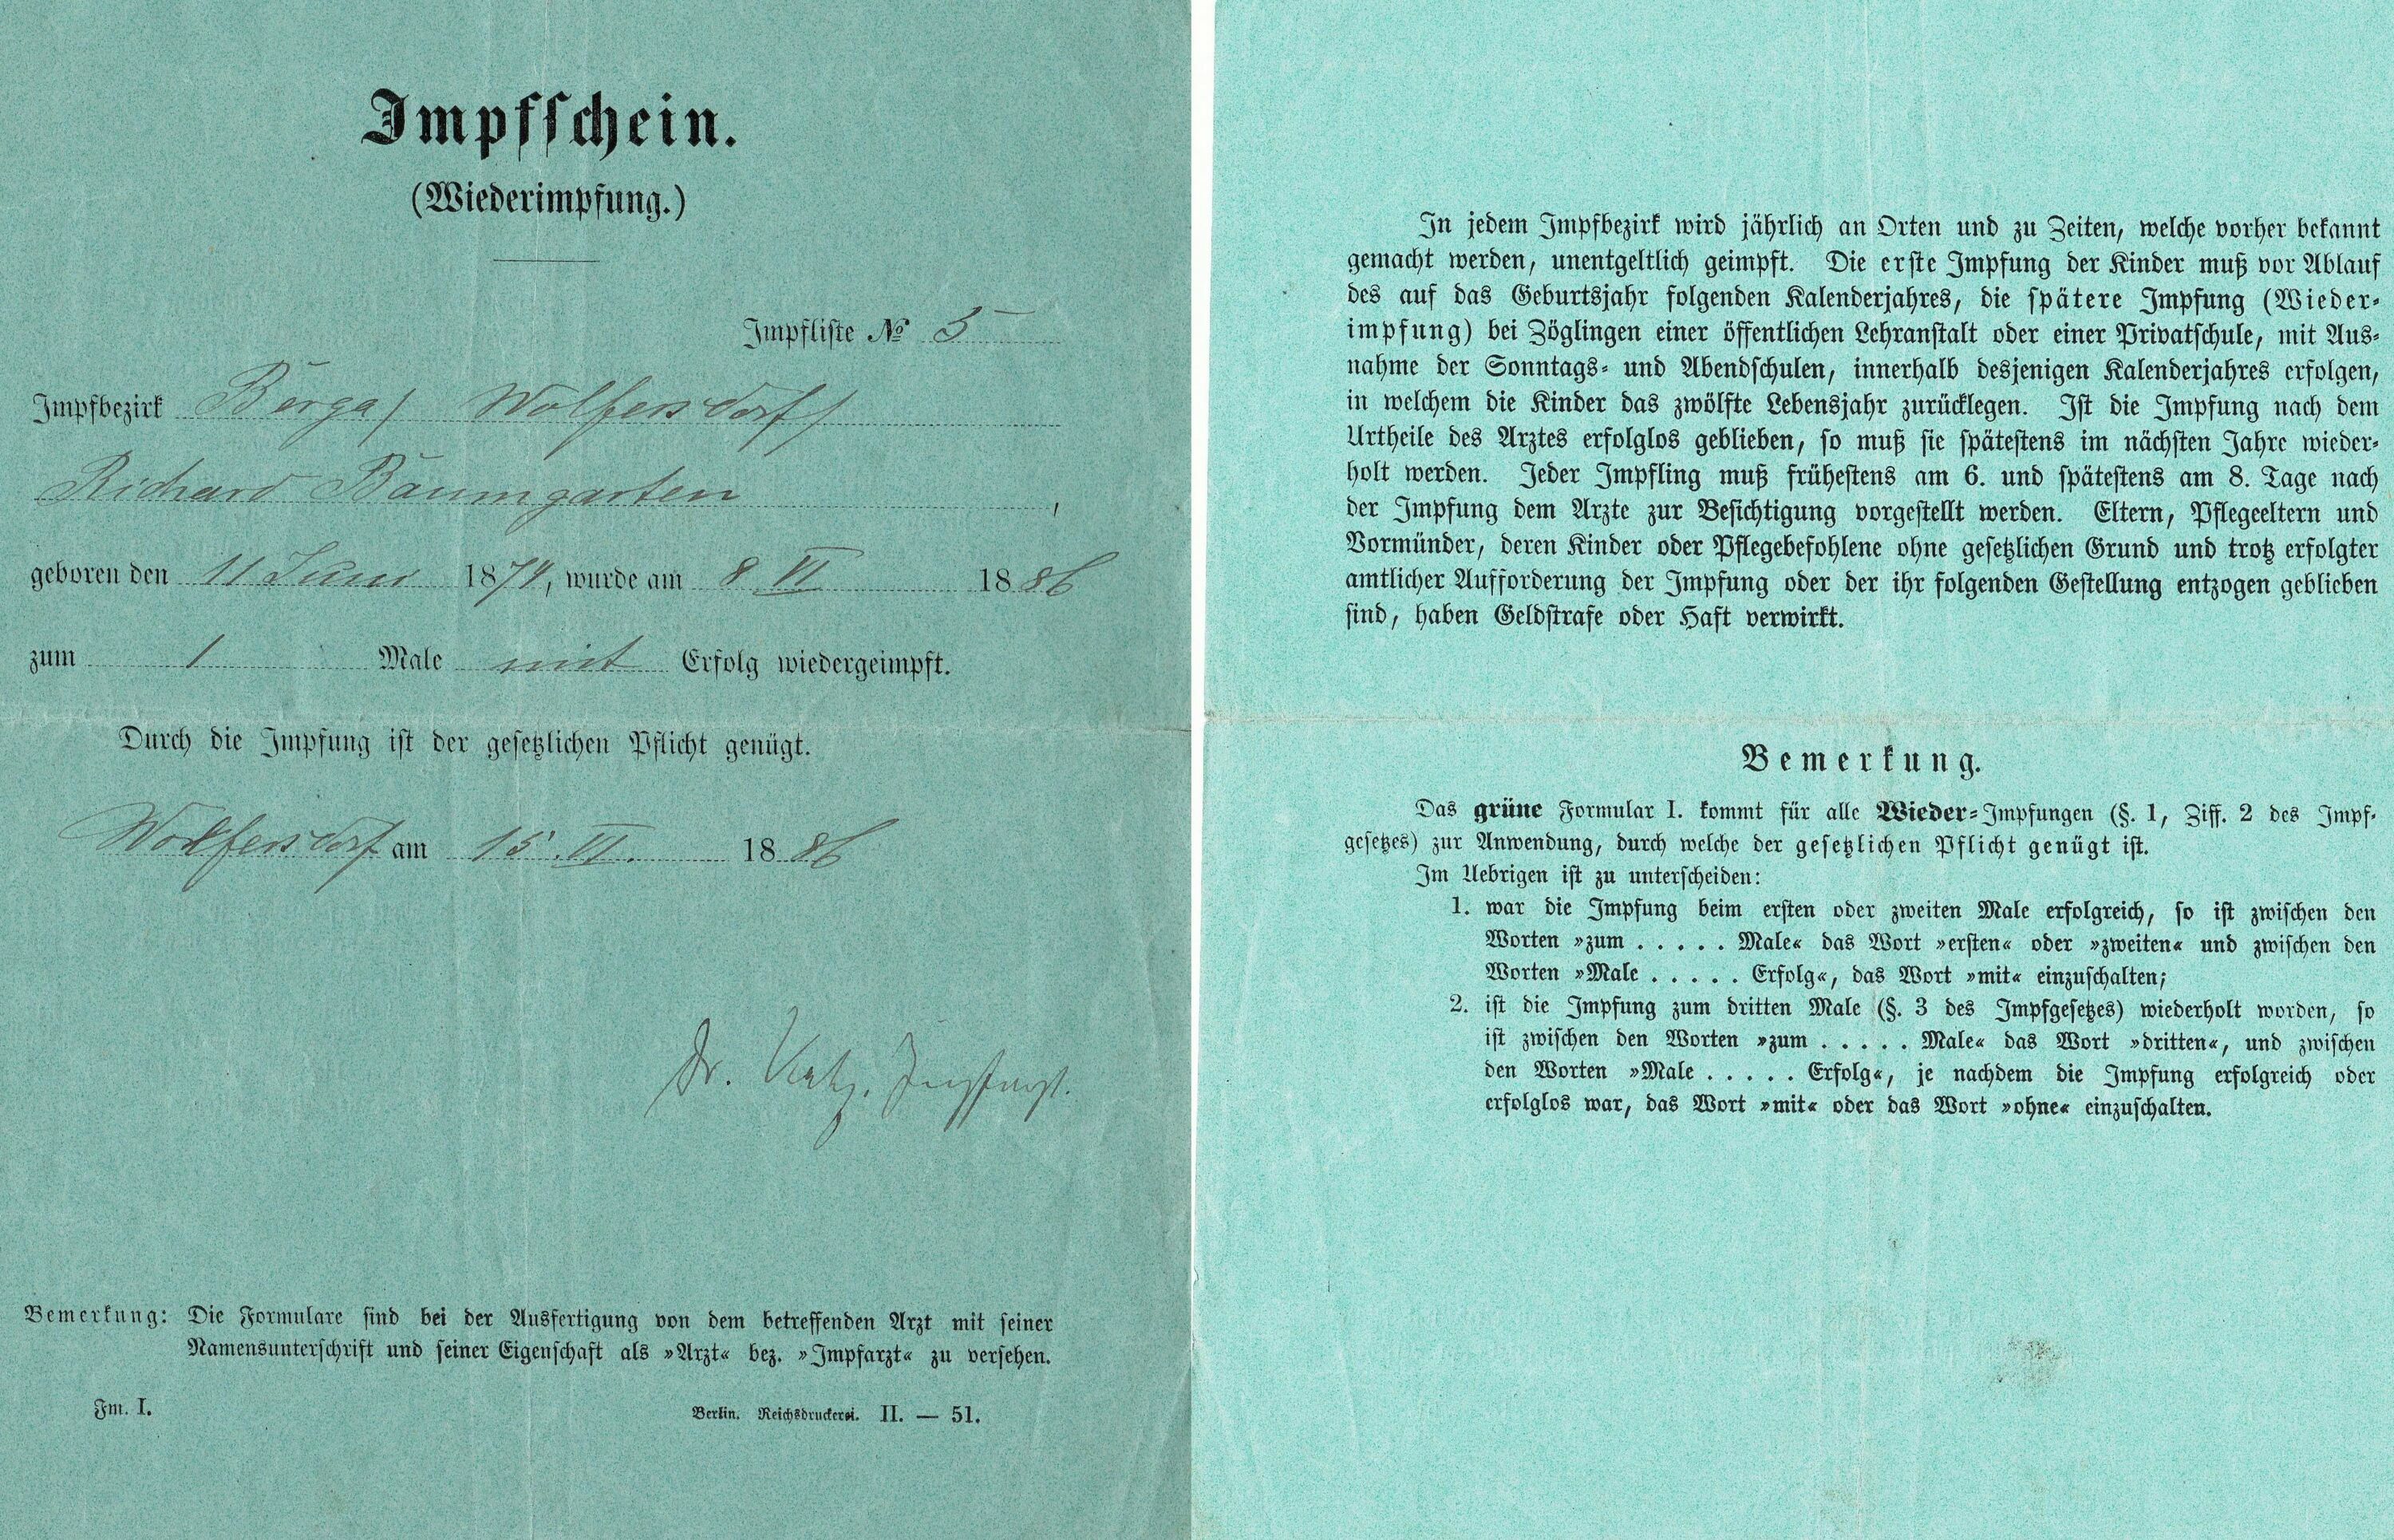 Zwei Seiten eines grünen Impfscheines von 1886 aus der Museumssammlung. Auf Seite 1 sind handschriftlich Daten des Inhabers notiert, auf Seite 2 sind Regeln und Bemerkungen gedruckt.